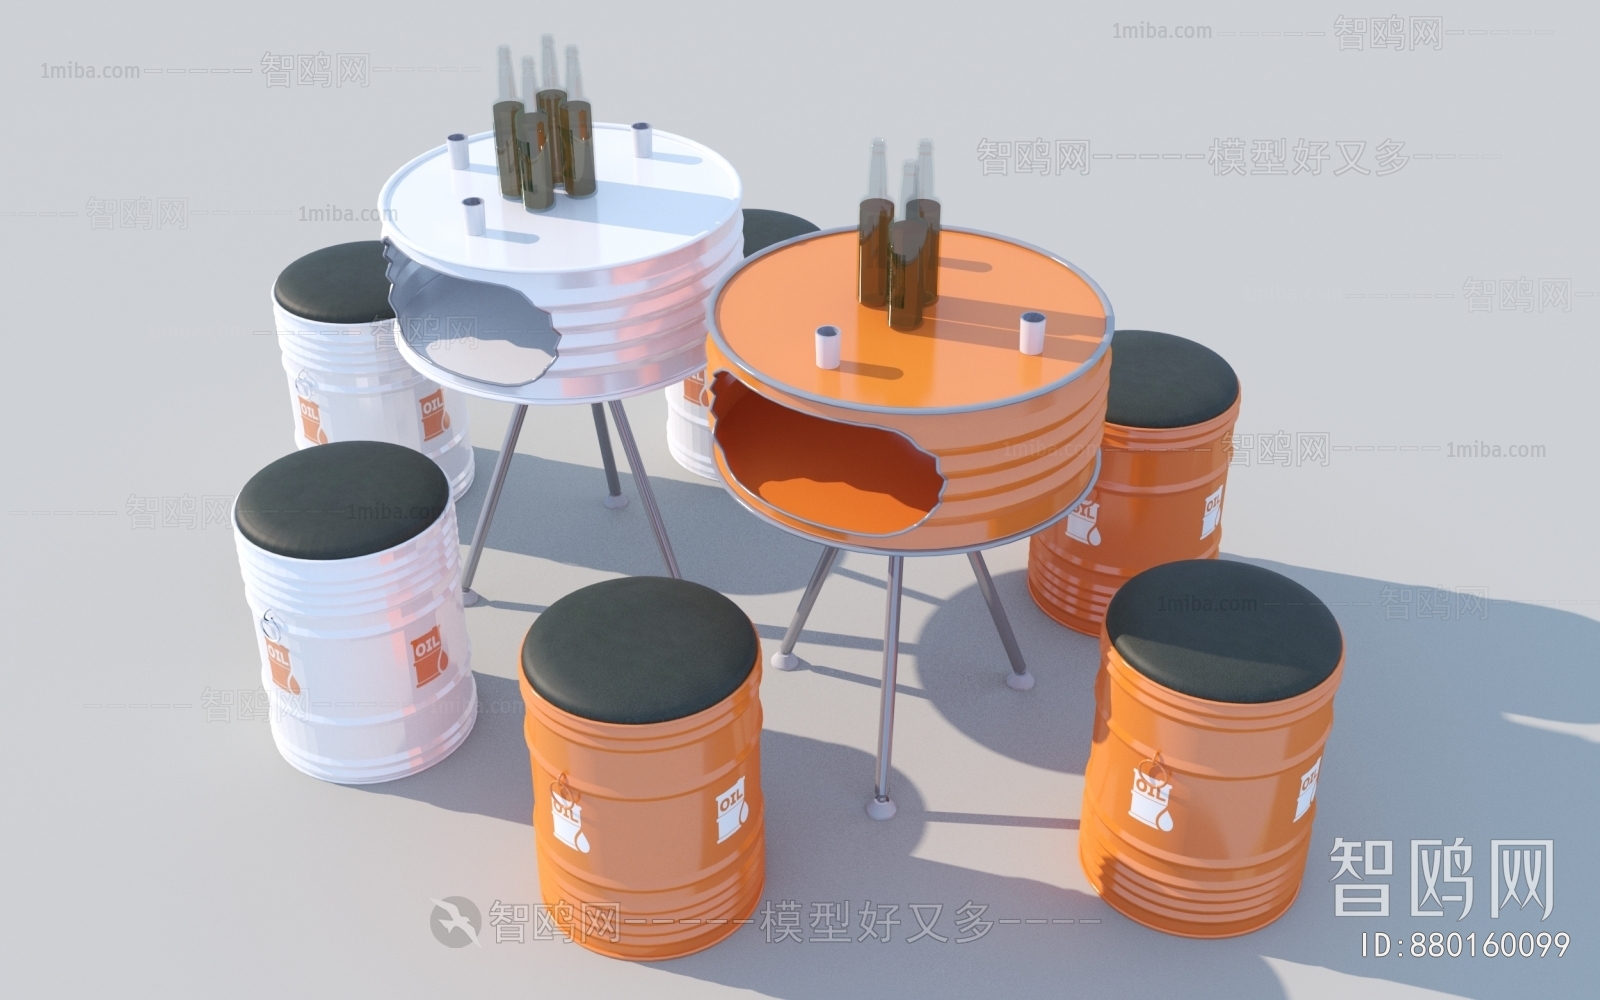 工业风创意油桶桌椅组合